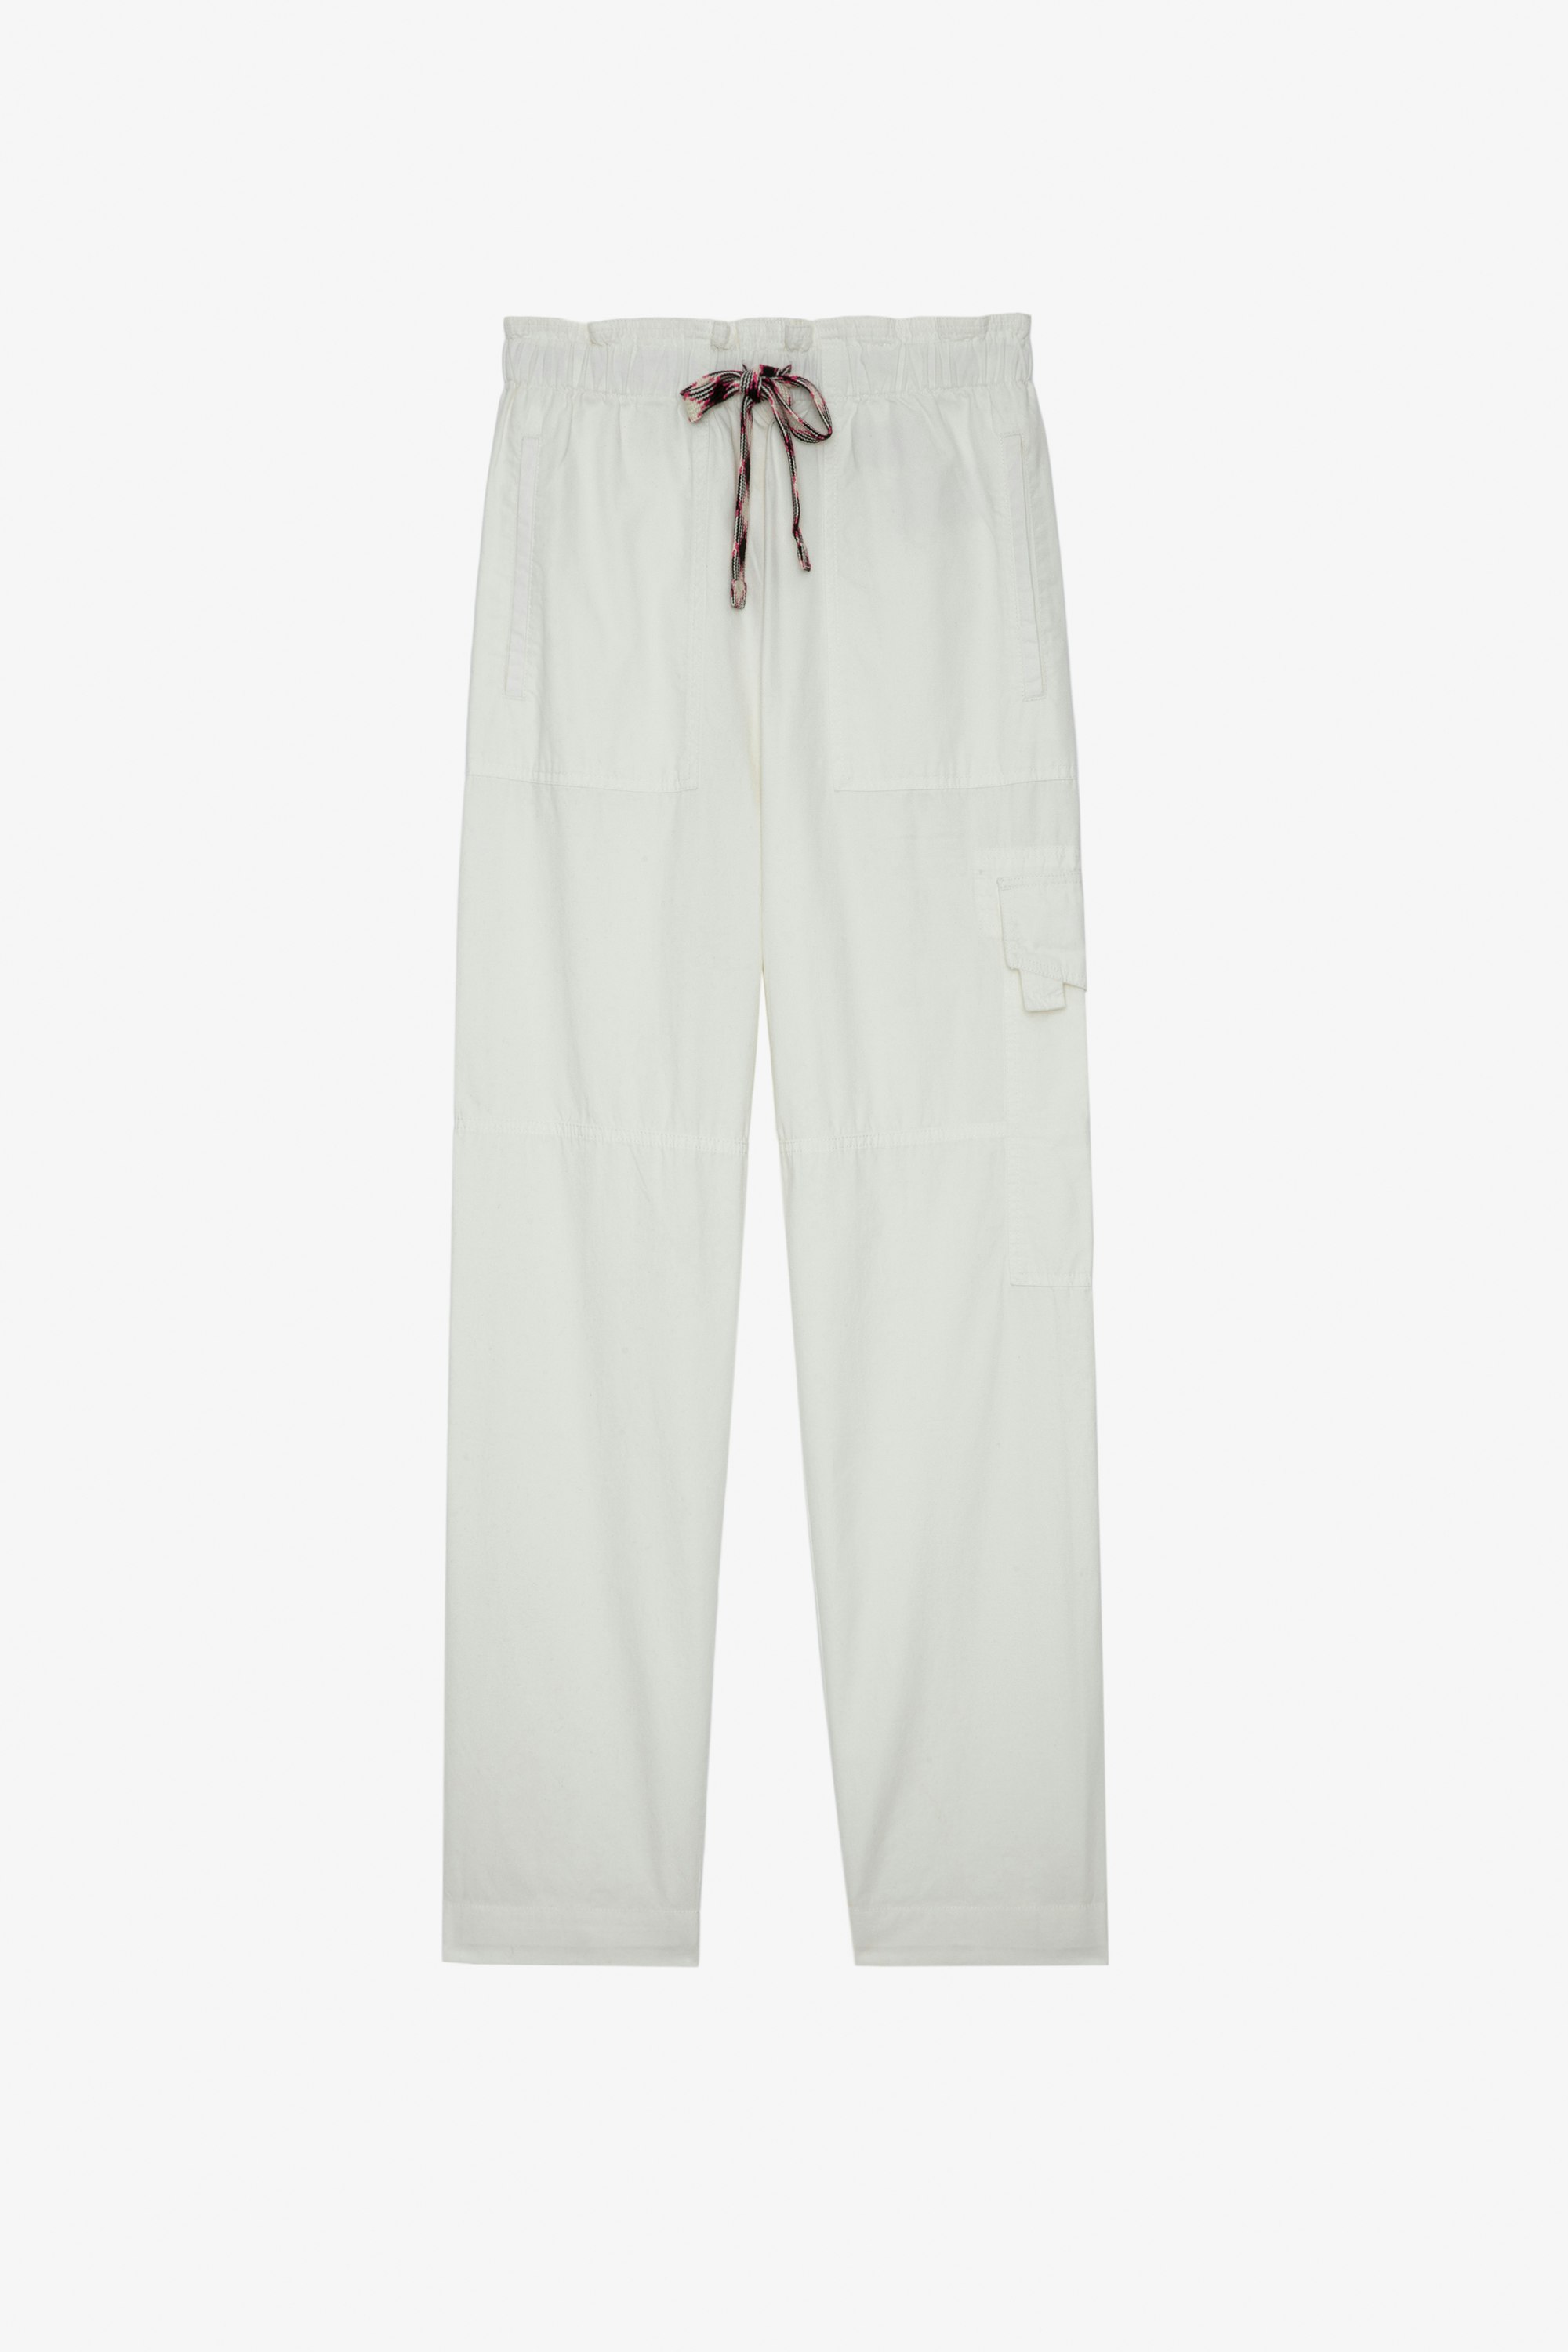 Plumy Trousers ホワイトコットン ベルト付きパンツ レディース